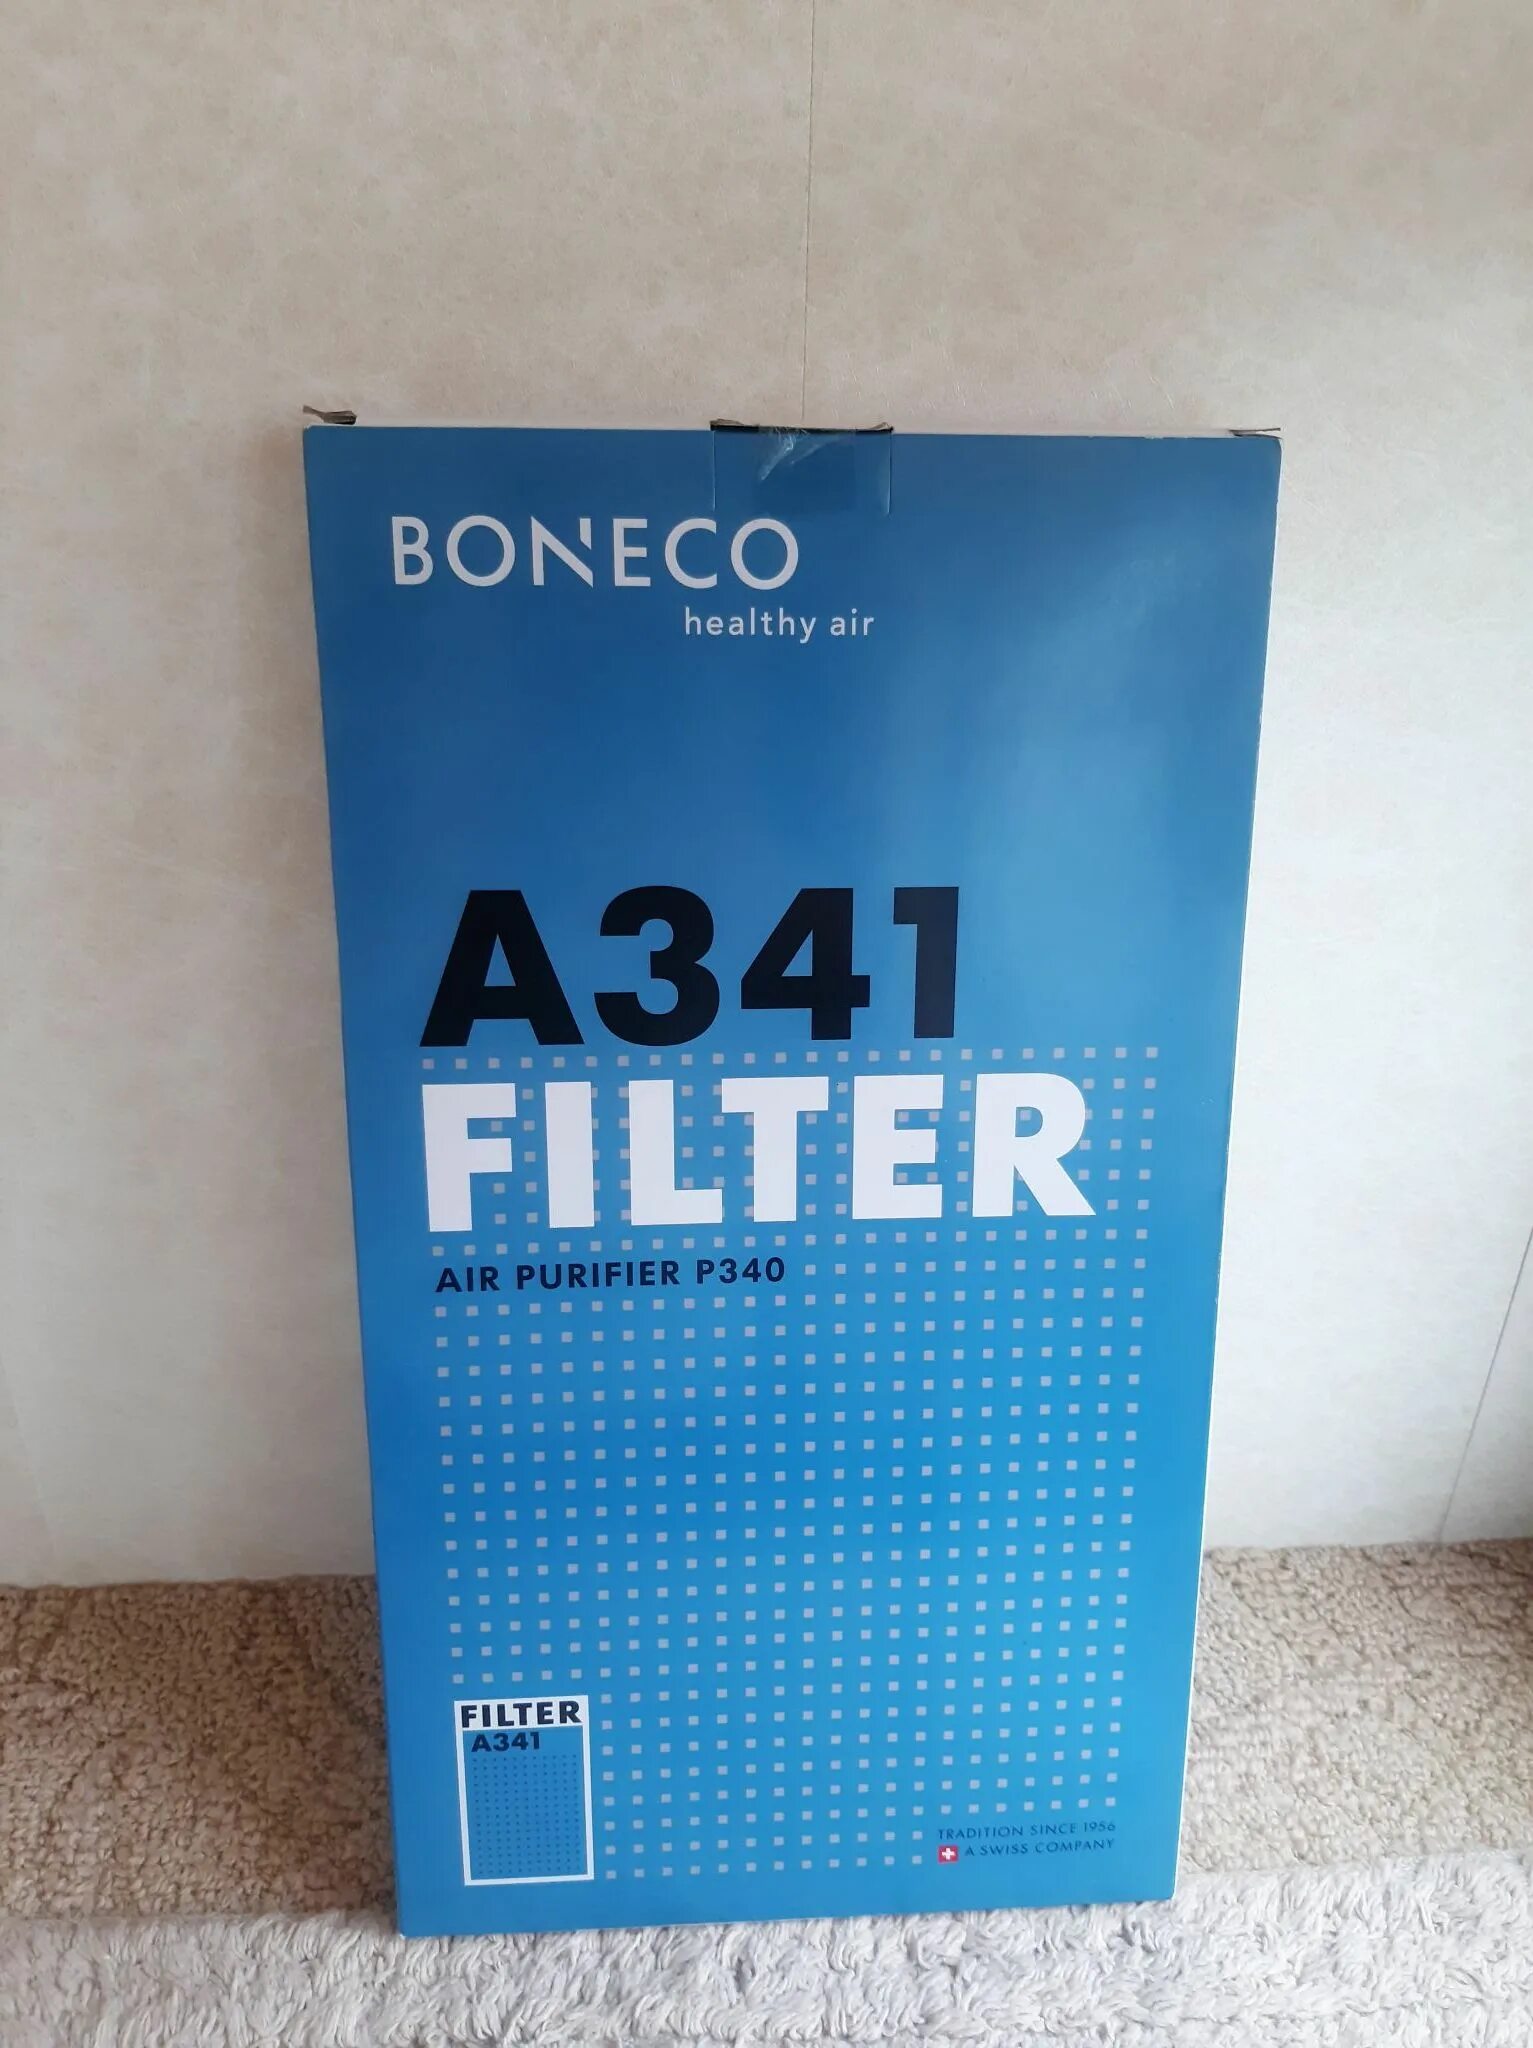 Boneco фильтры купить. Фильтр Boneco a341. HEPA a341 для Boneco p340. Boneco a7414. HEPA a341 для увлажнителя (воздухоочистителя) Boneco p340.